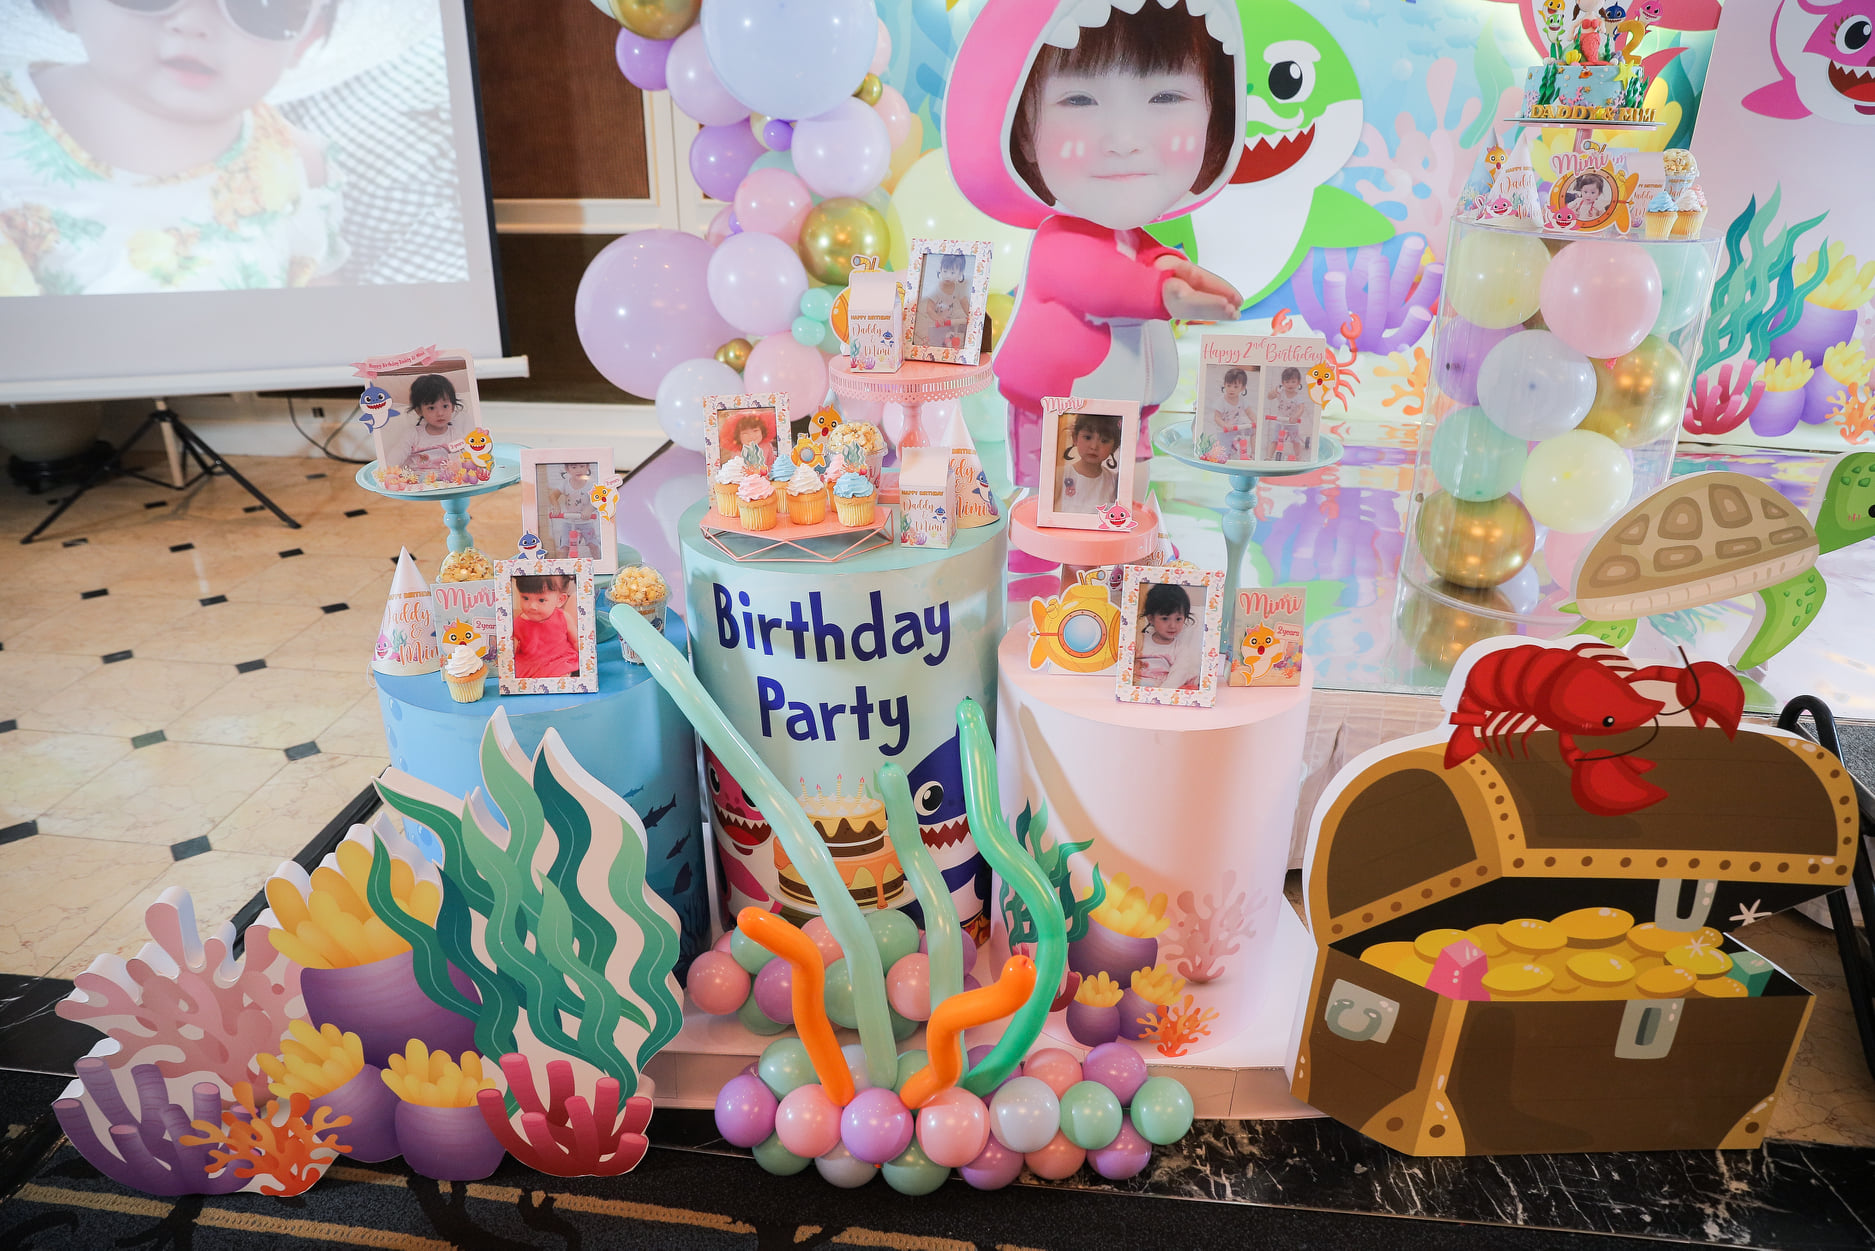 Trang trí sinh nhật cho bé tại Hà Nội